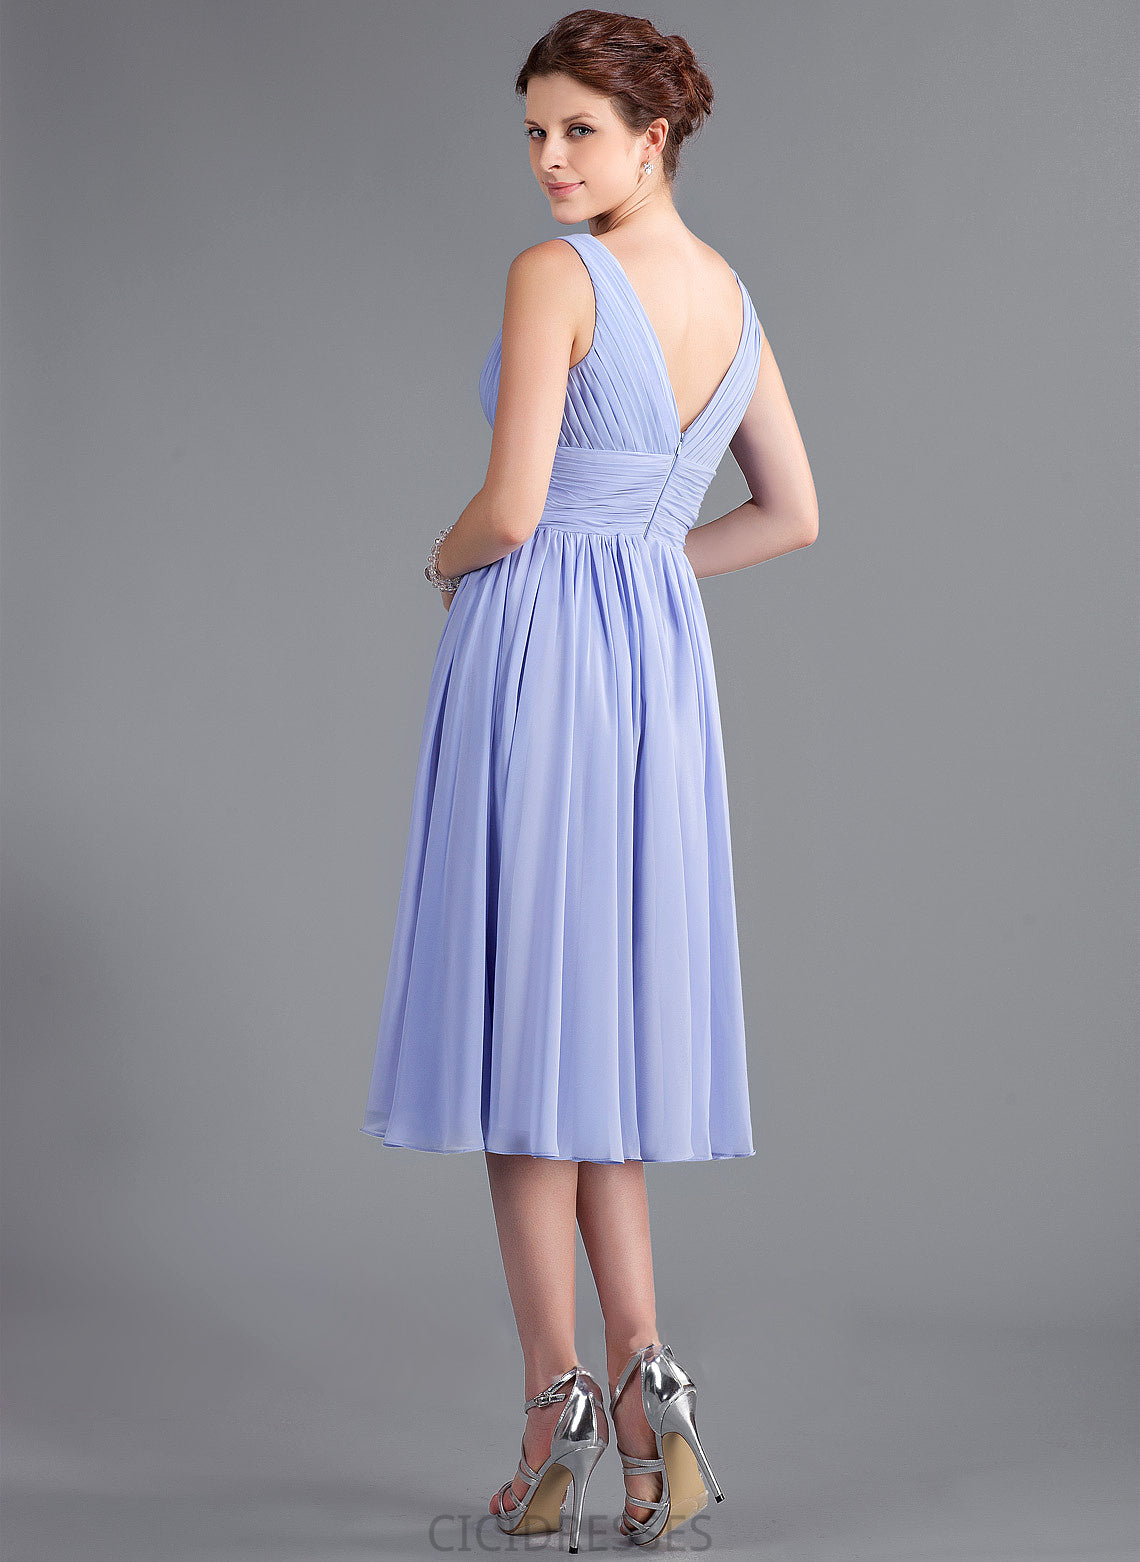 Neckline V-neck Length Fabric Ruffle A-Line Silhouette Embellishment Tea-Length Presley A-Line/Princess Sleeveless Bridesmaid Dresses